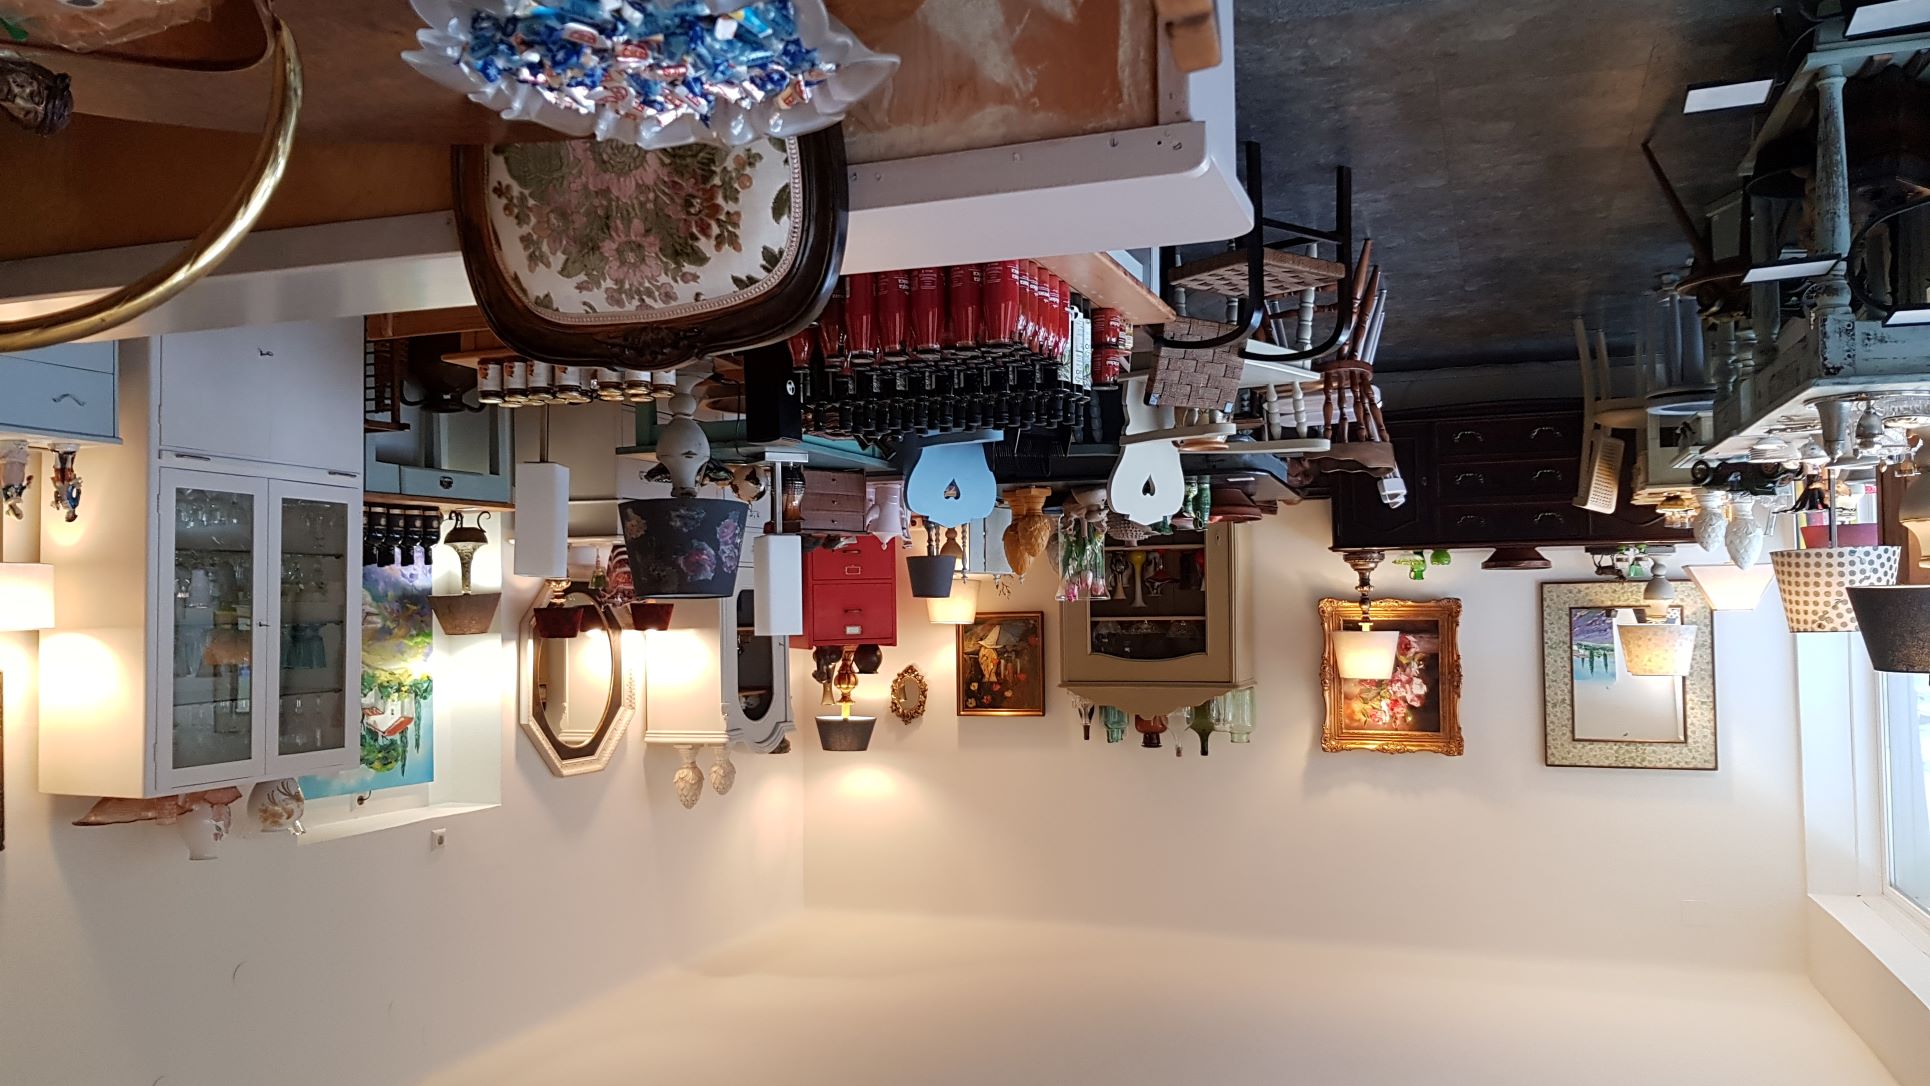 Der Verkaufsraum von Homeart mit vielen restaurierten Altmöbeln sowie Lampen, Gemälden und Genussprodukten auf den Tischen